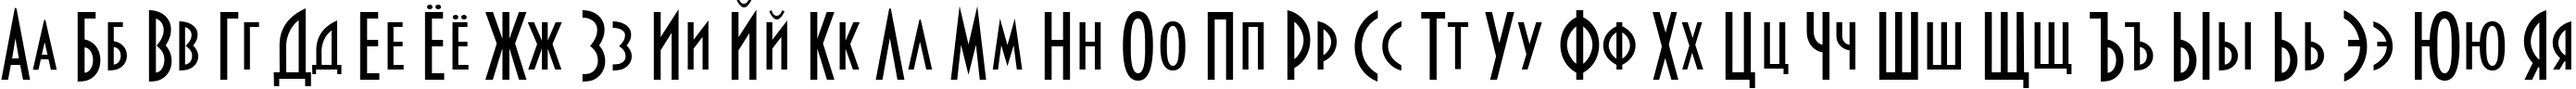 Пример написания русского алфавита шрифтом Bankir-Retro